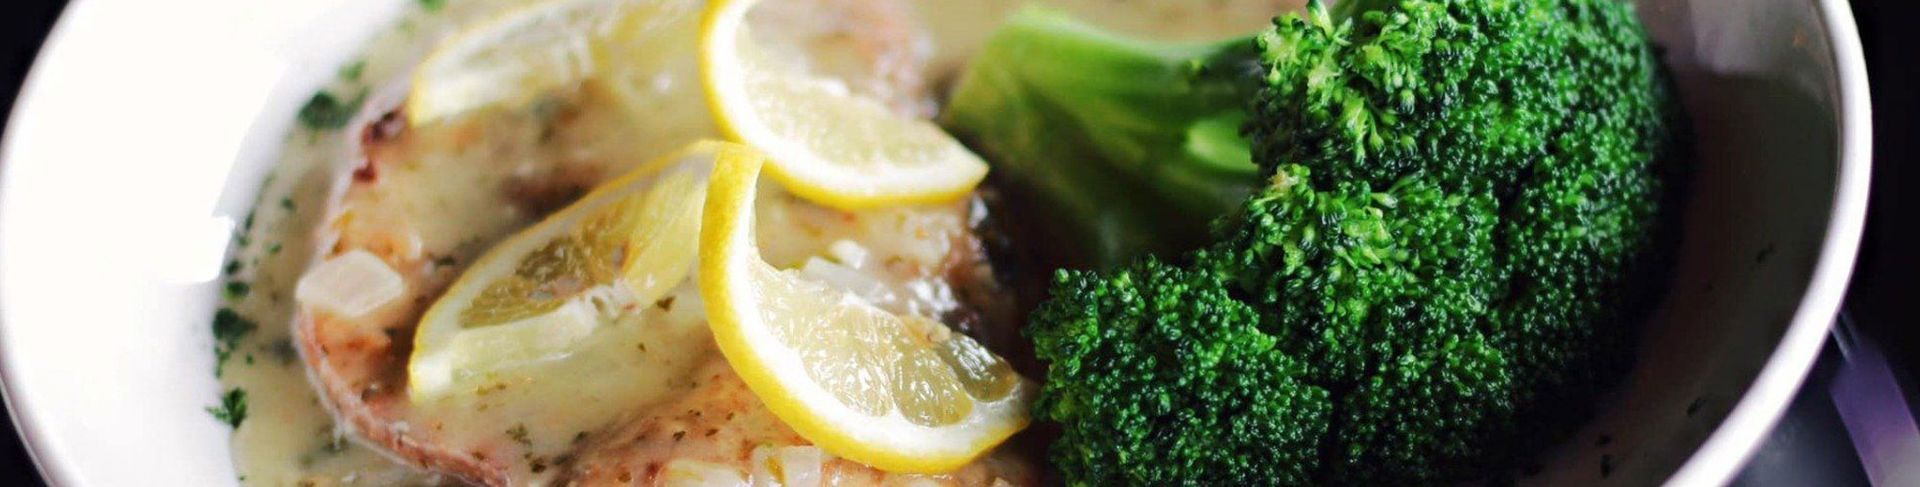 Fish Lemon and Broccoli